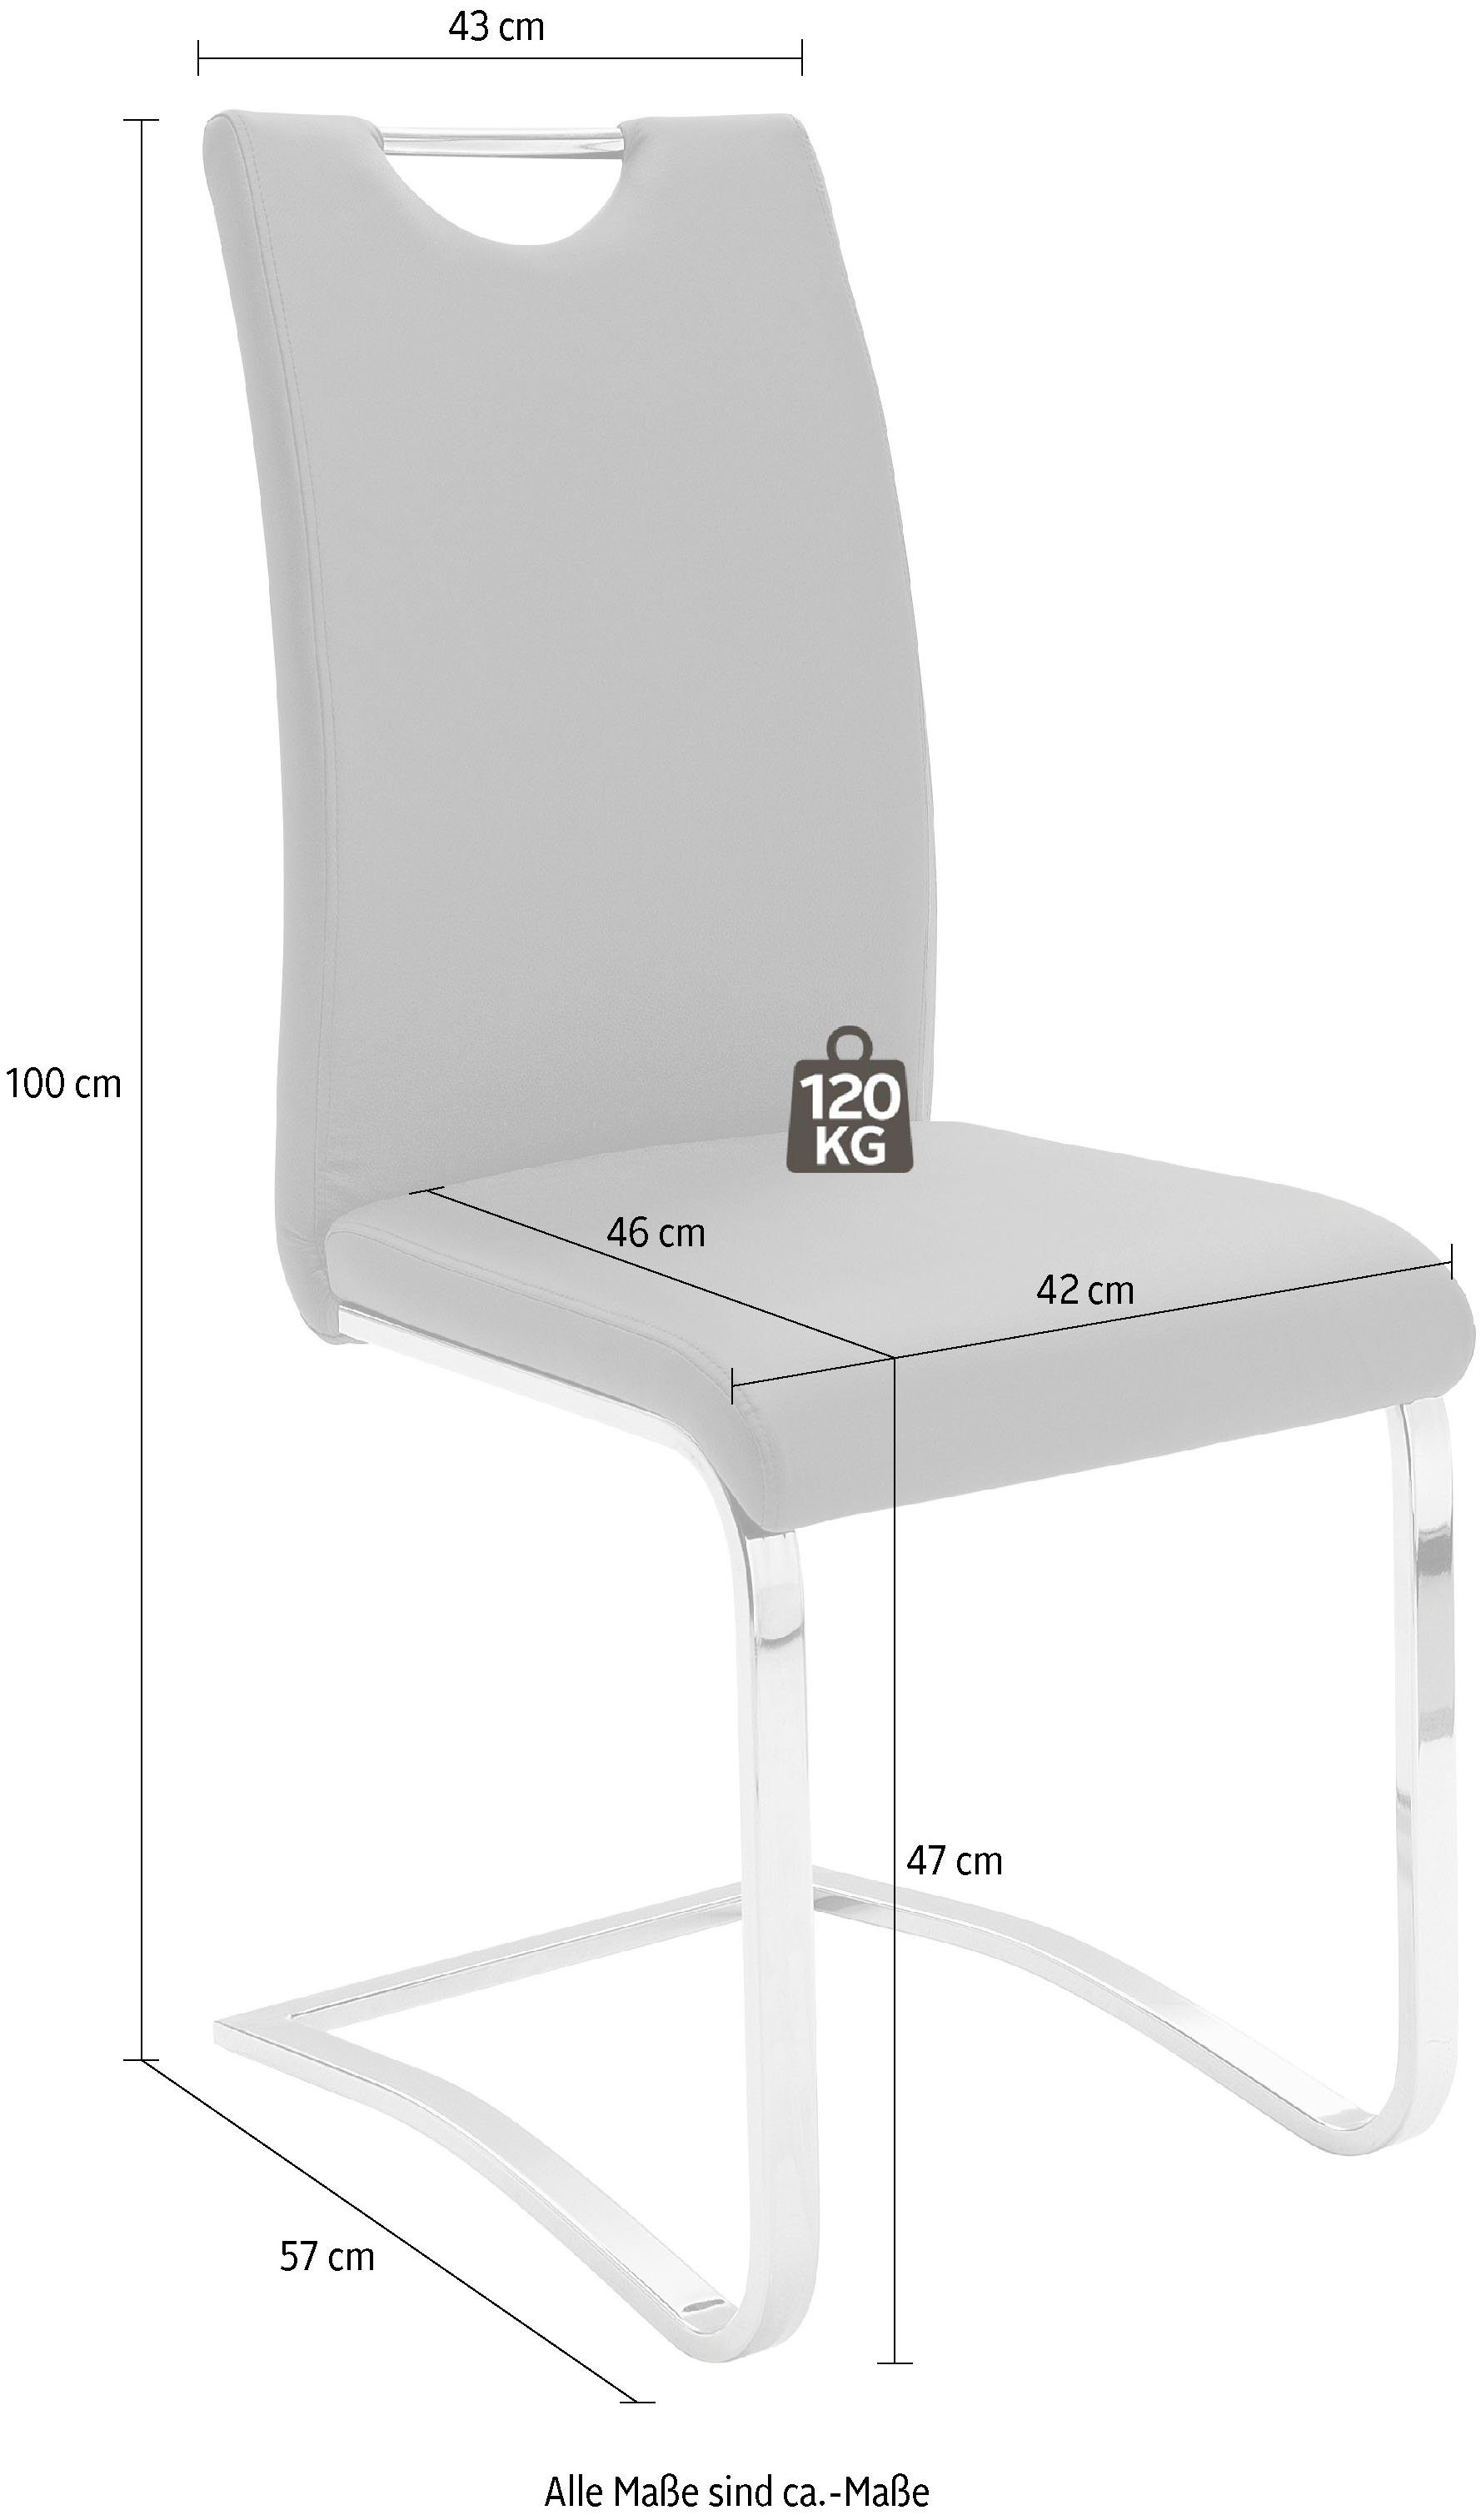 MCA furniture Freischwinger 4 120 kg Komfortsitzhöhe, Kunstlederbezug, bis Köln belastbar (Set, Stuhl Grau | St), Grau